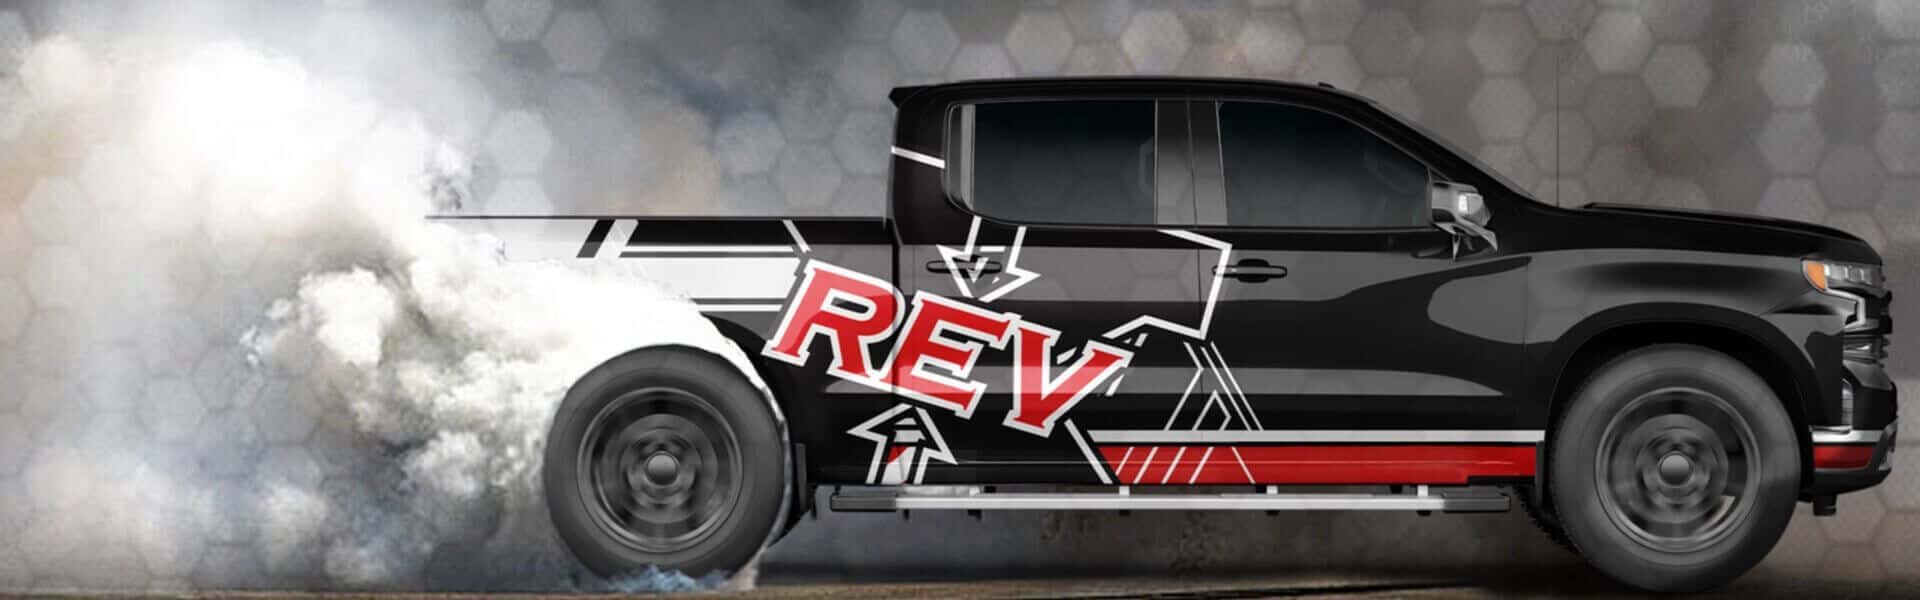 REV X - Stiction Fix Truck Burnout Background